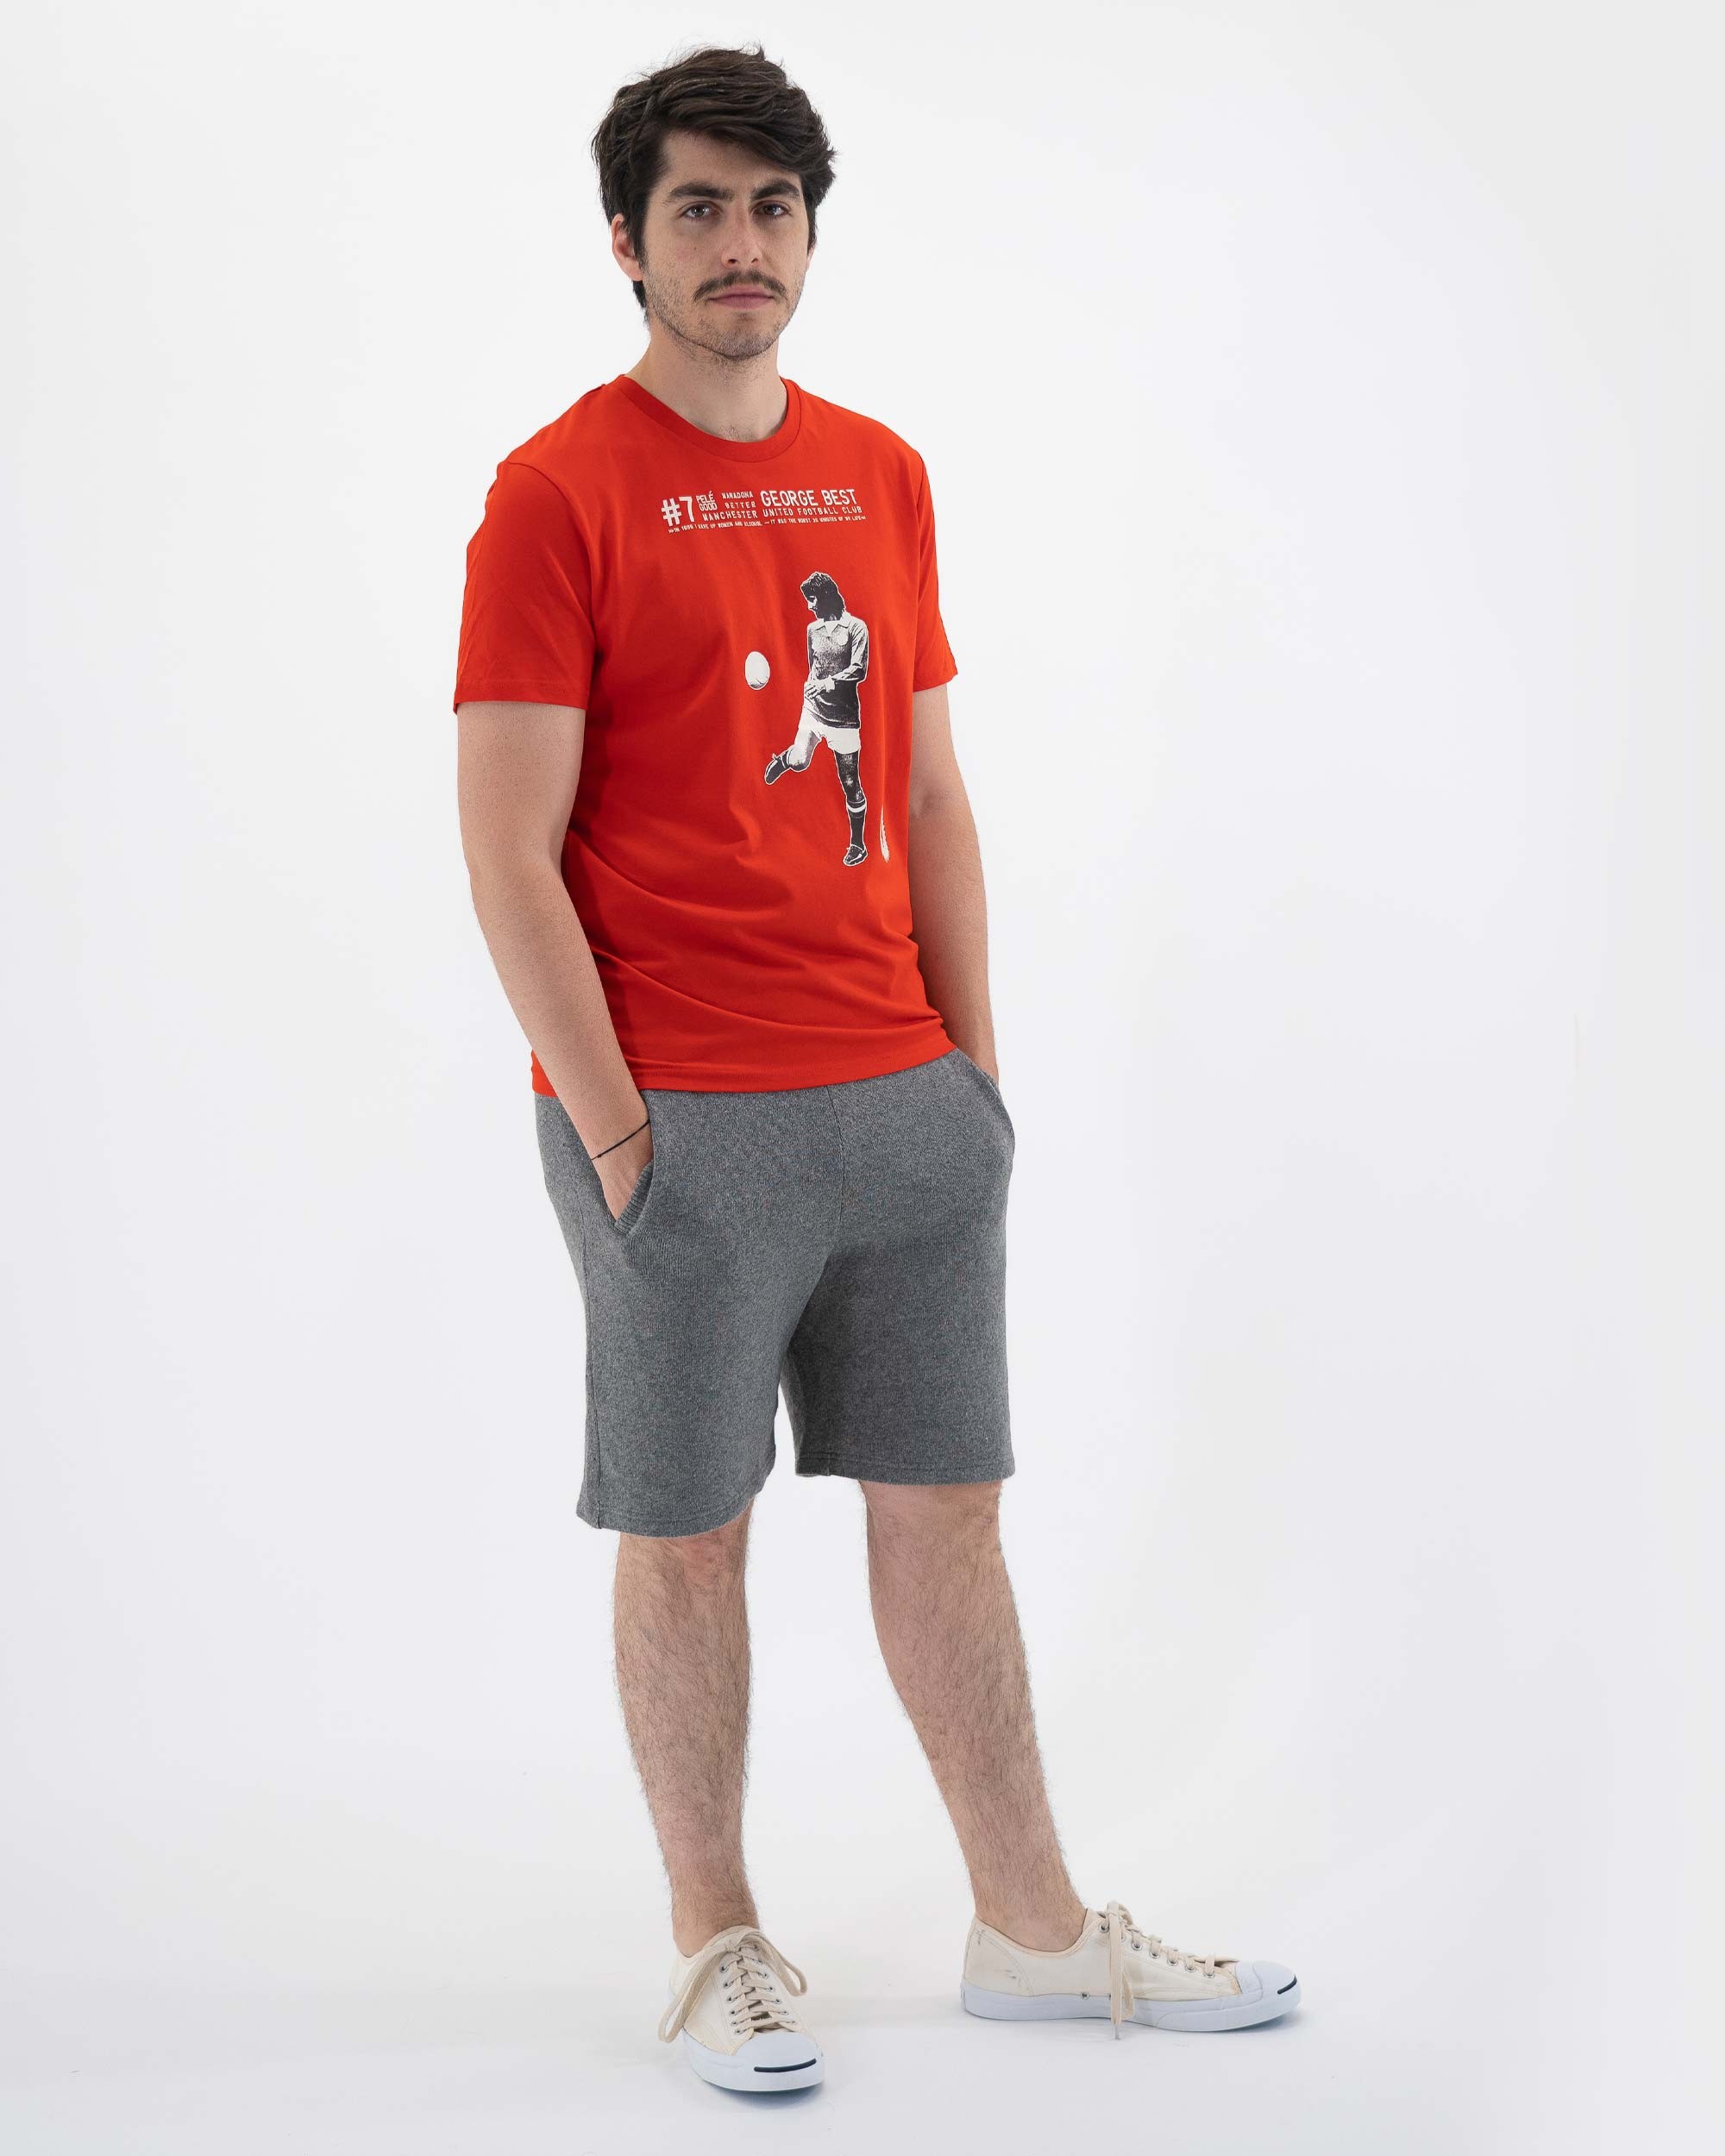 T-shirt George Best de couleur Rouge par Sucker For Soccer